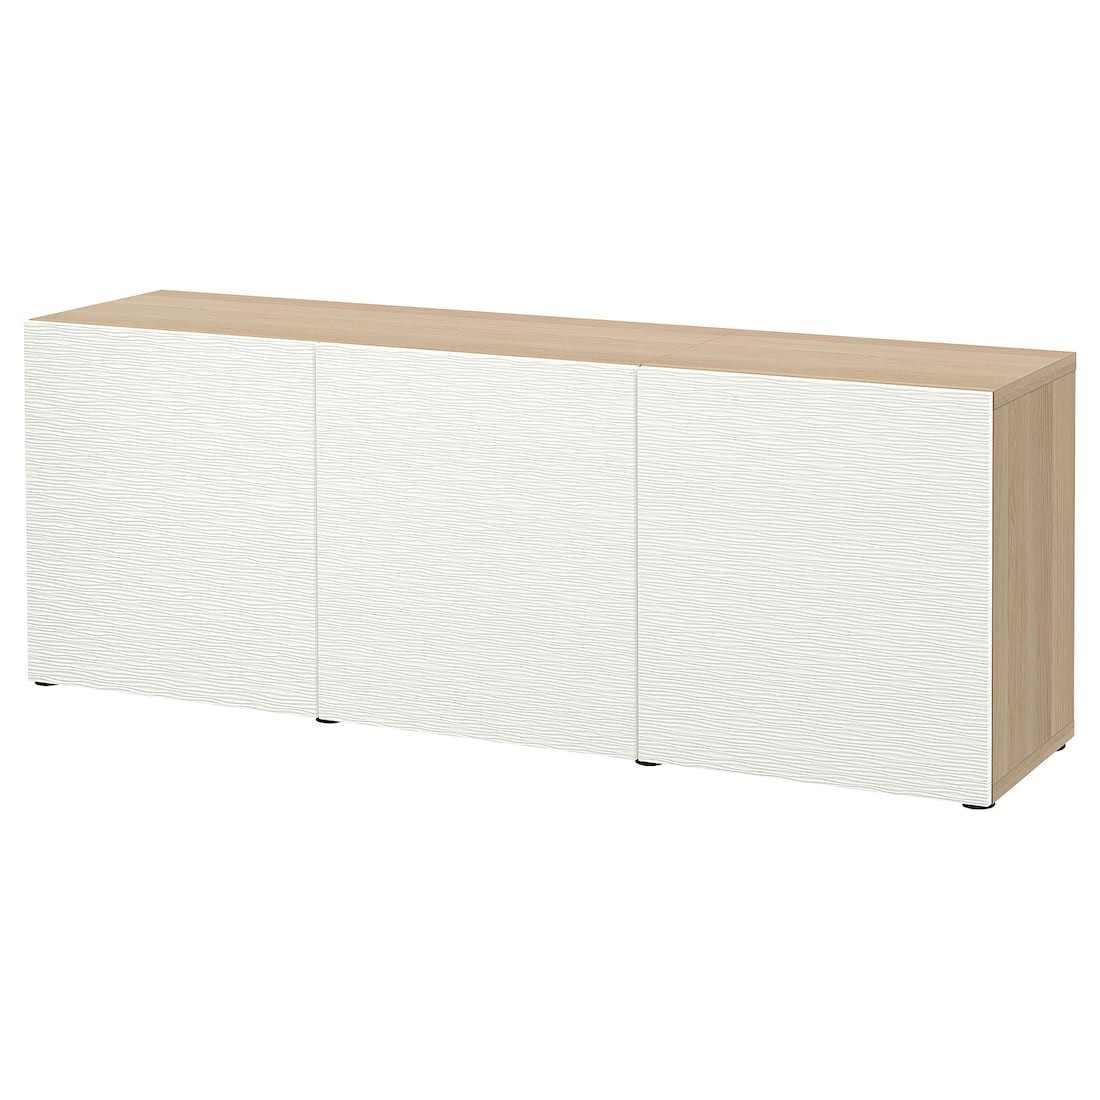 IKEA BESTÅ БЕСТО Комбінація для зберігання з дверцятами, під білений дуб / Laxviken білий, 180x42x65 см 29325008 293.250.08